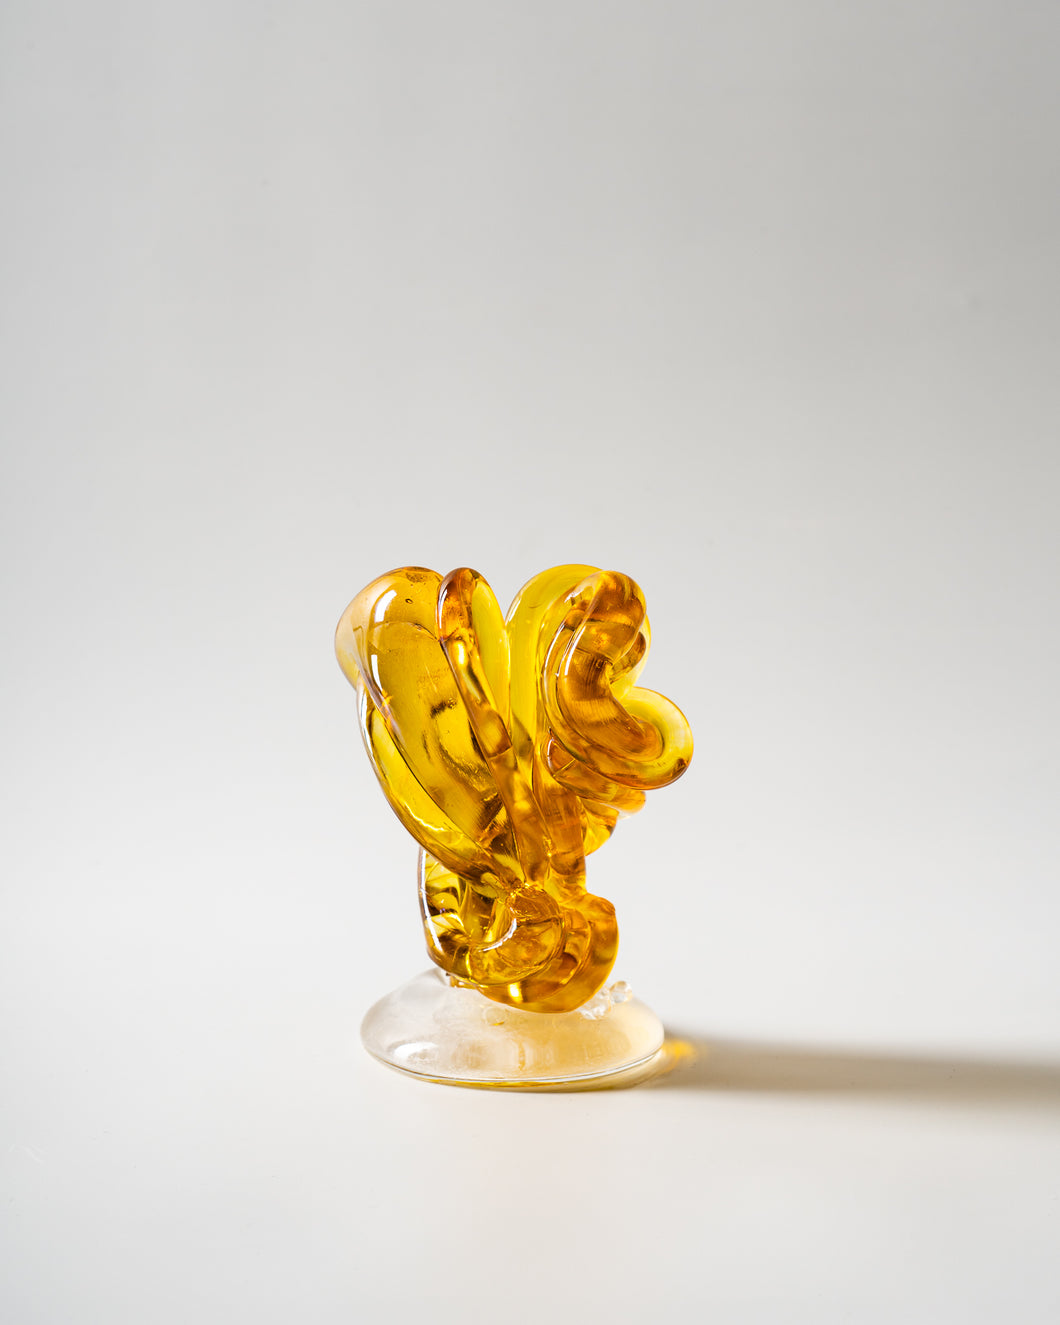 Qualia Sculpture - Amber